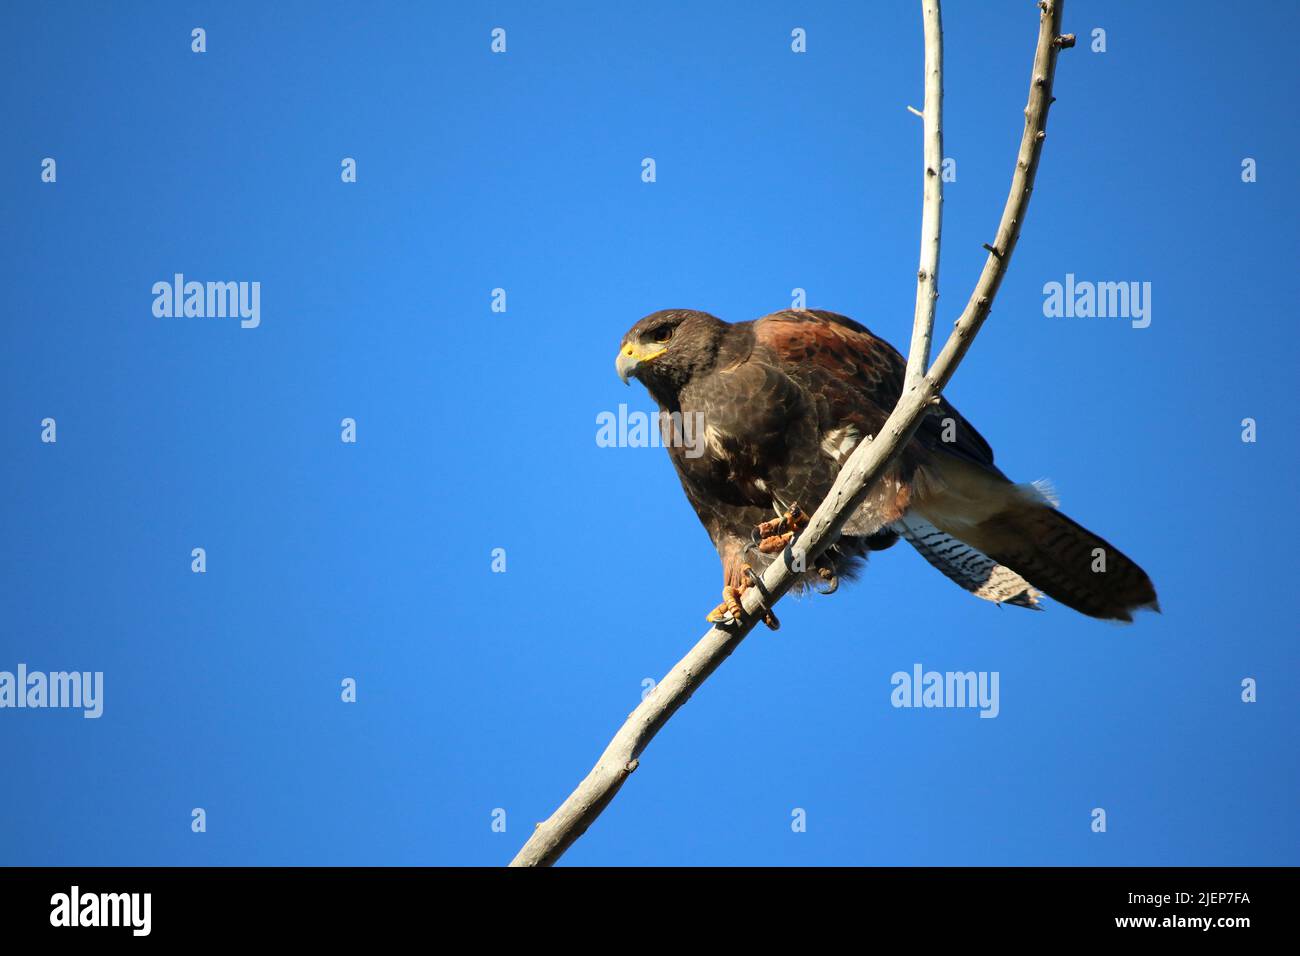 Falco di Harris selvatico (parabuteo unicinctus) messo in evidenza contro cielo blu brillante, i taloni afferrano saldamente rami di salice di persico, pronti per l'azione. Foto Stock